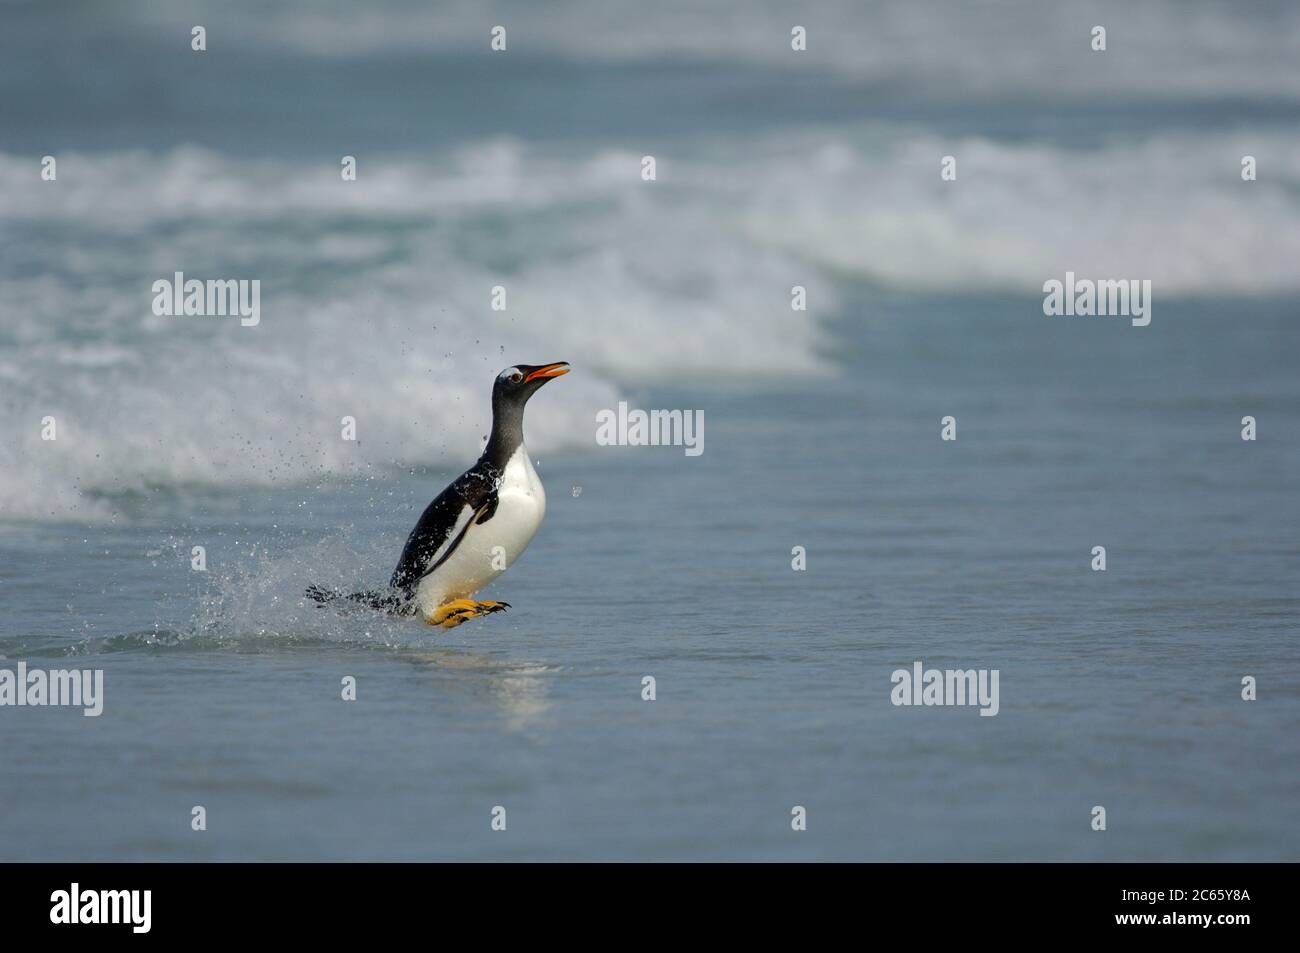 Atteindre la plage le Penguin Gentoo (Pygoscelis papouasie) doit passer de la position de natation horizontale à la position de marche verticale le plus rapidement possible. C'est un moment dangereux, car les lions de mer se cachent dans la ligne de surf. [taille d'un organisme : 75 cm] Banque D'Images